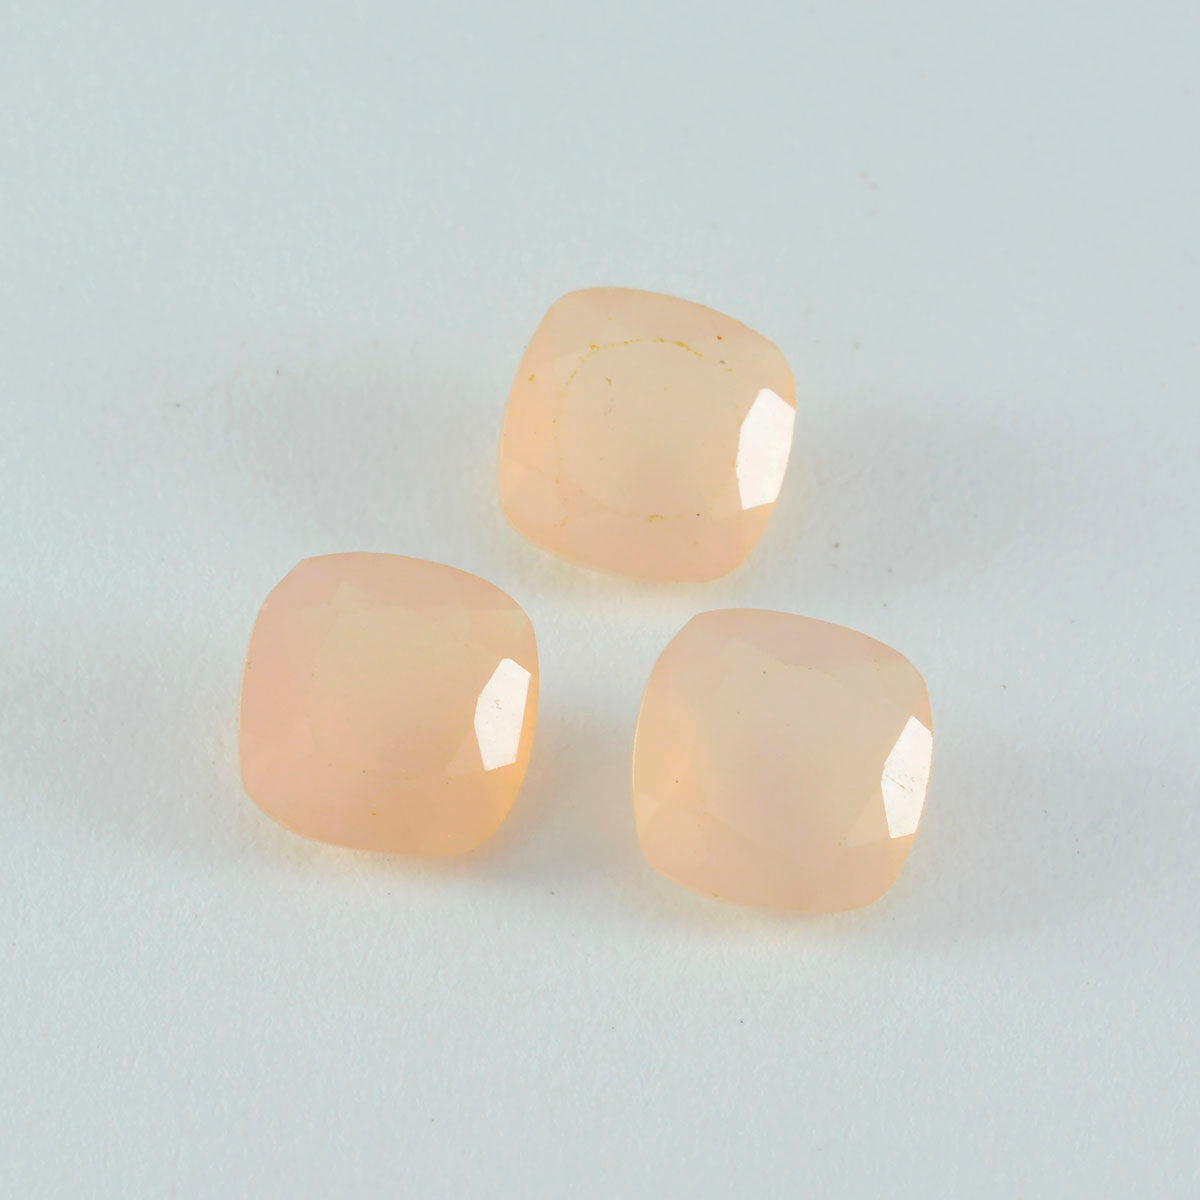 Riyogems, 1 pieza, cuarzo rosa facetado, 14x14 mm, forma de cojín, gemas de calidad fantástica